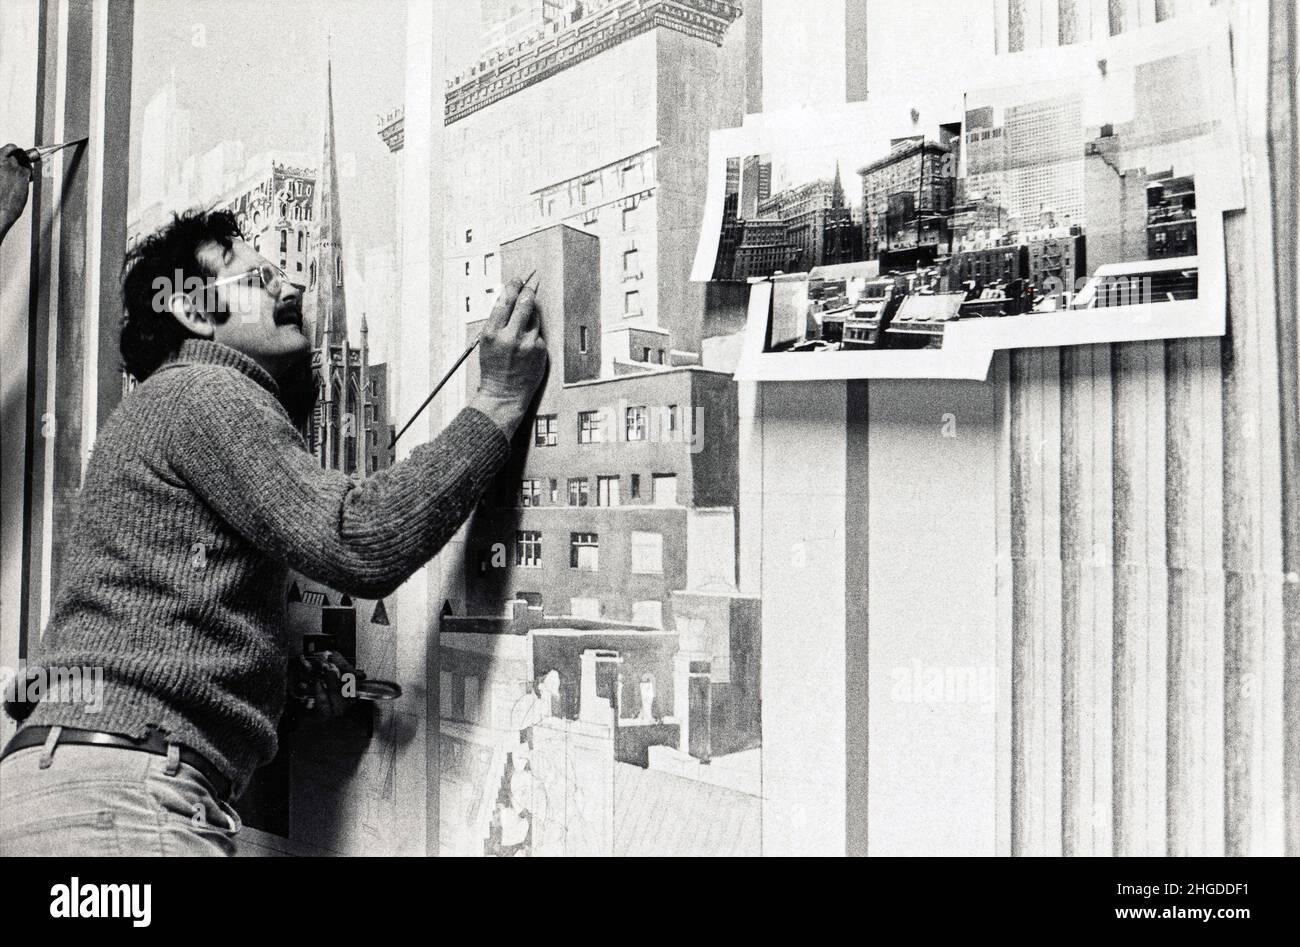 Trompe L'Oiel artist Richard Haas in his Greenwich Village loft in Soho, New York City in 1977. Stock Photo